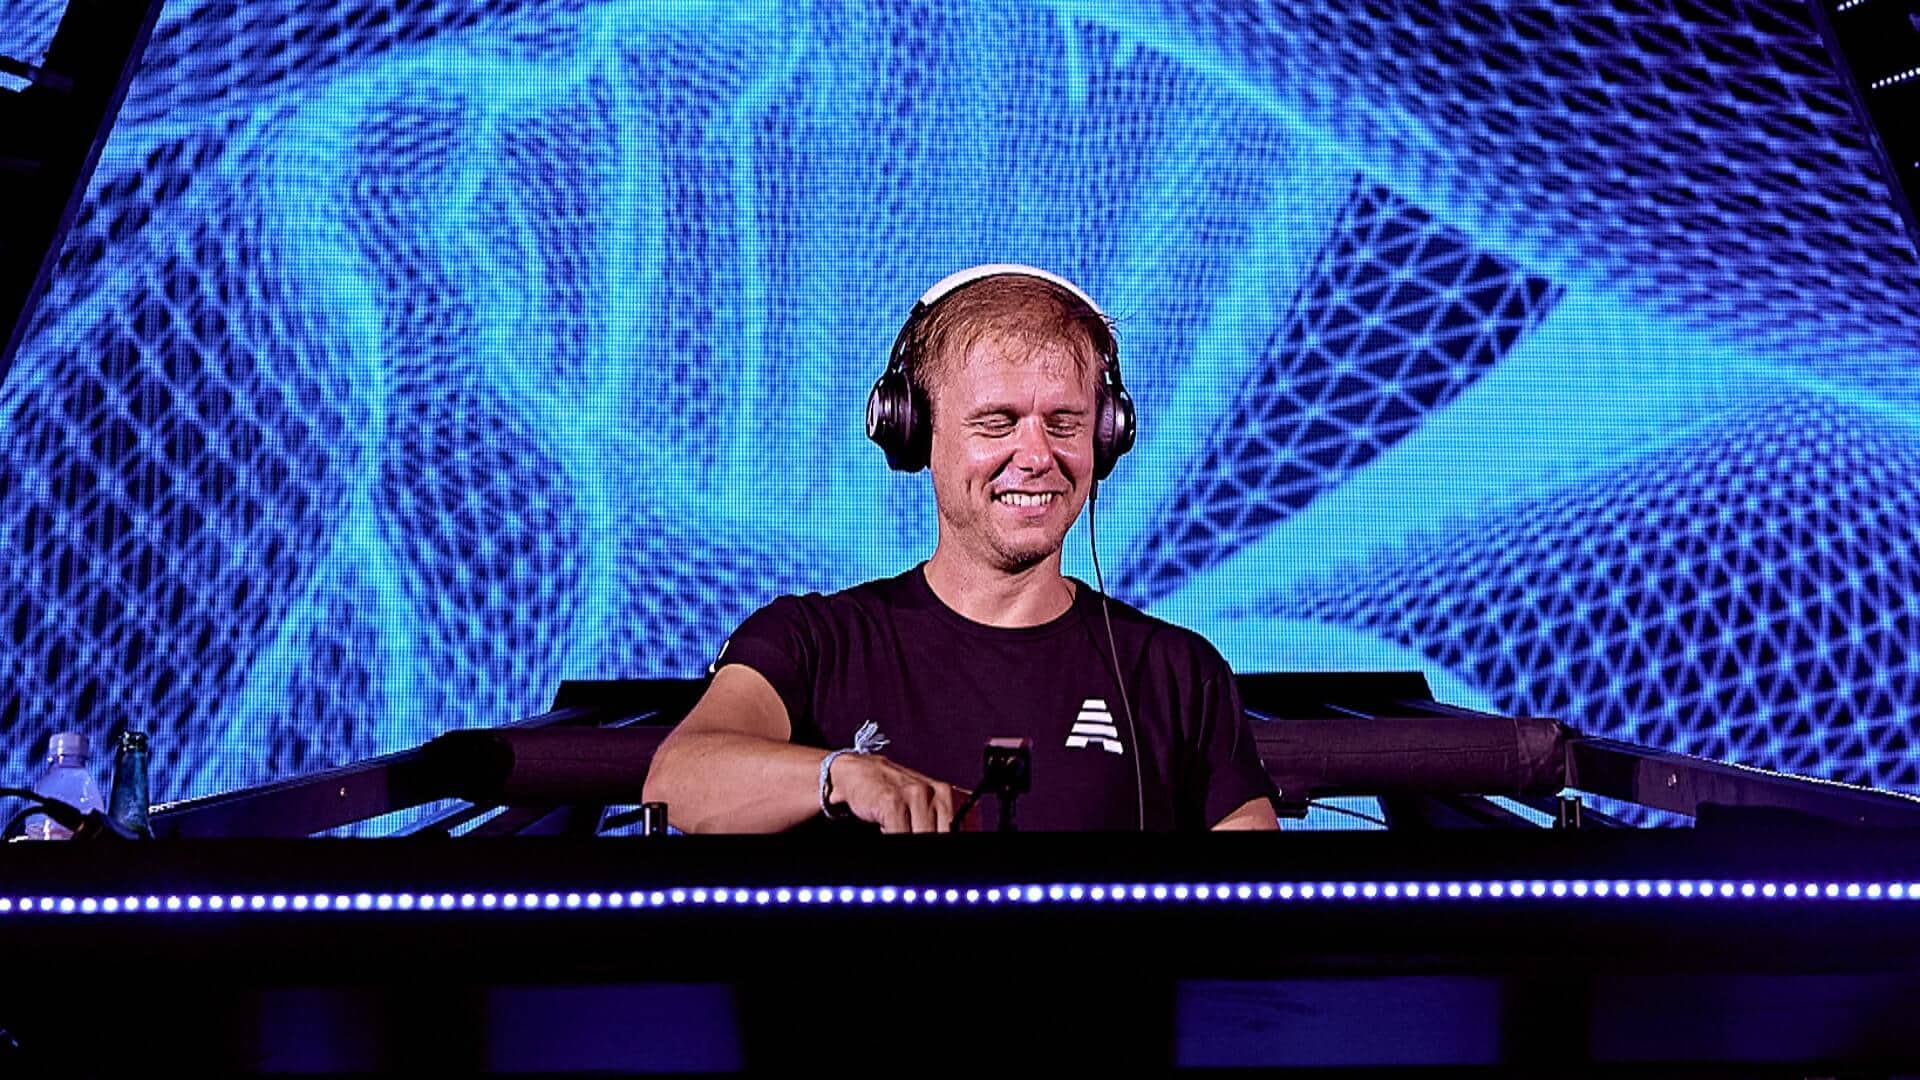 Armin van Buuren enlists Avalan for huge new release titled ‘Should I Wait’: Listen